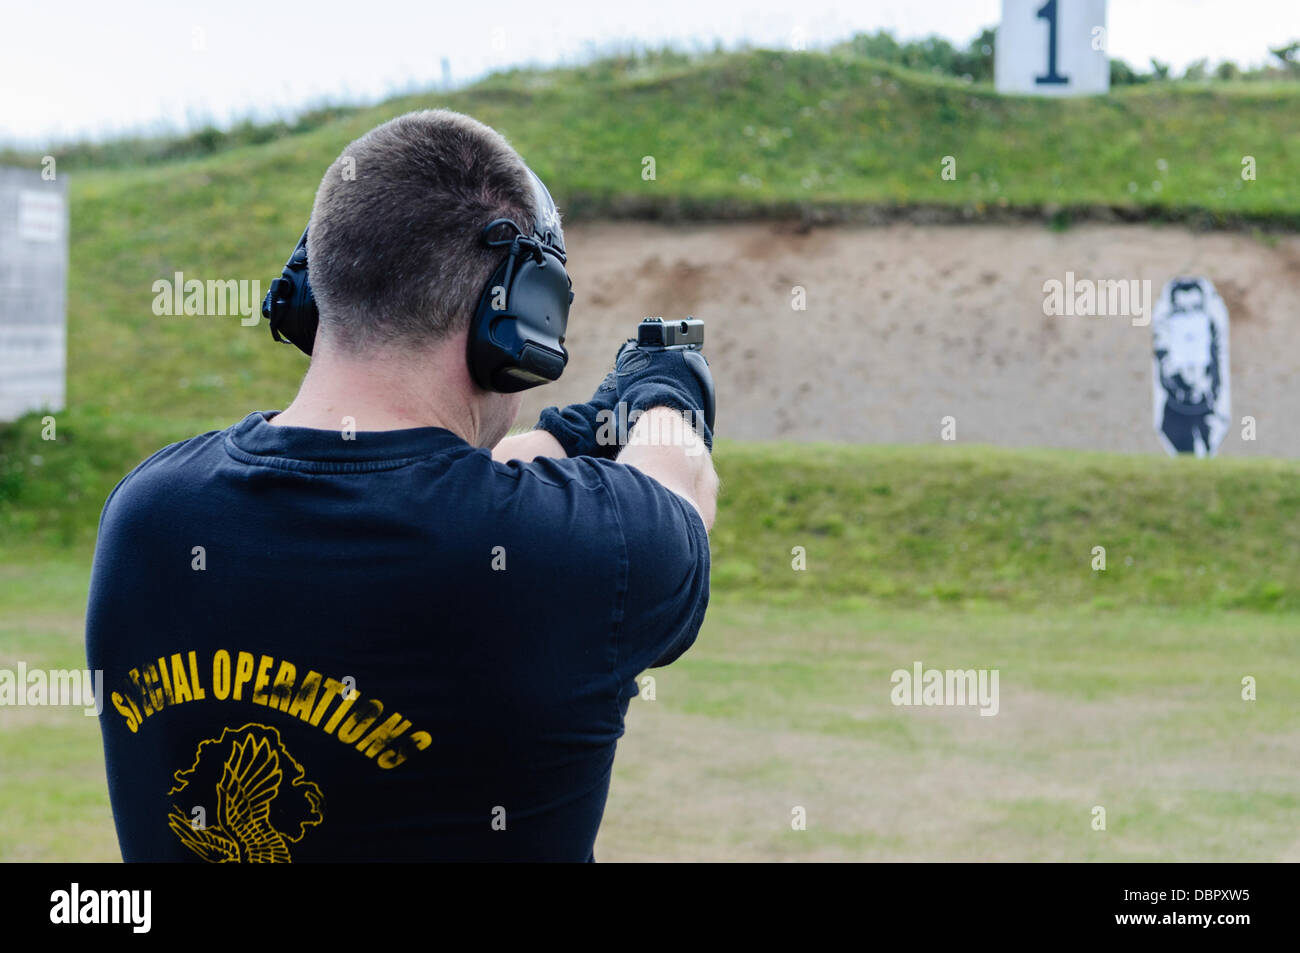 Ballykinlar, Nordirland. 2. August 2013 - ein Mann mit einem Special Operations t-Shirt feuert eine Glock 19 Pistole auf einem Schießplatz Credit: Stephen Barnes/Alamy Live News Stockfoto